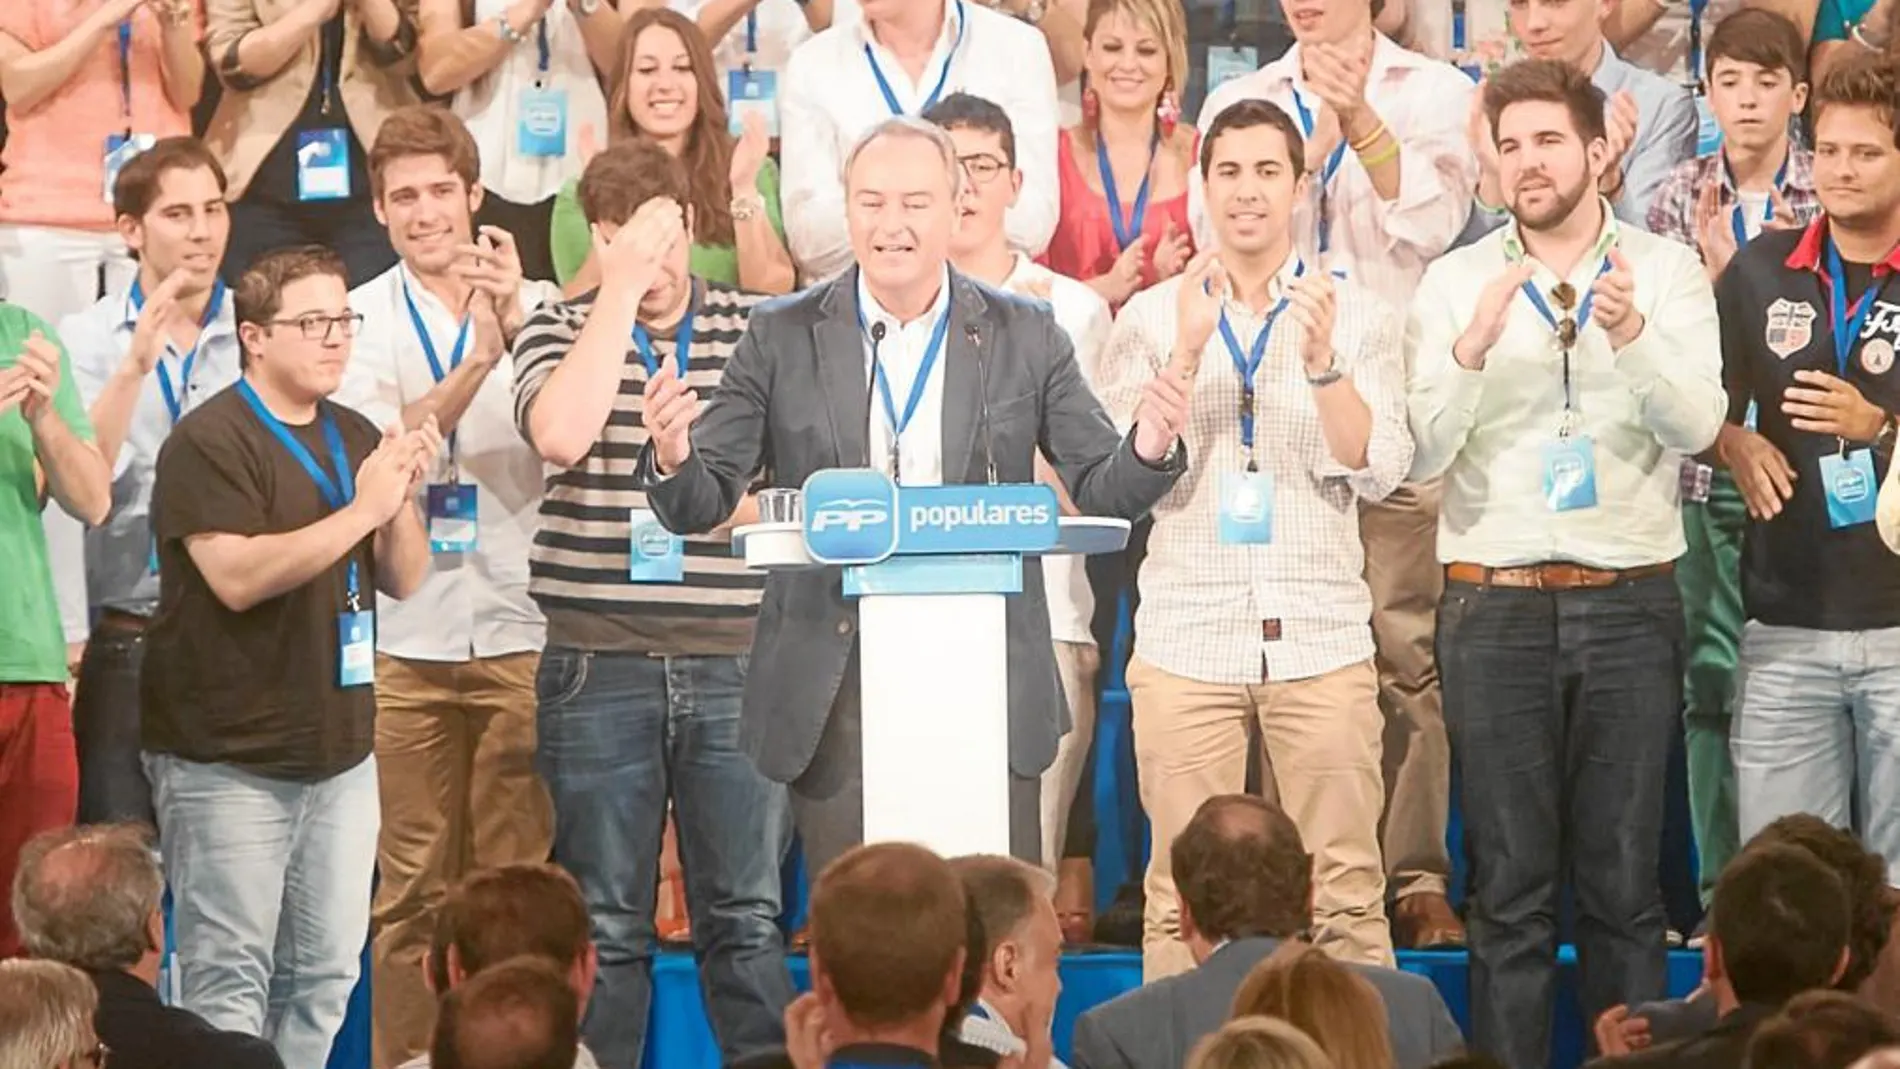 Arriba, el presidente Alberto Fabra en el momento en que consiguió levantar al público